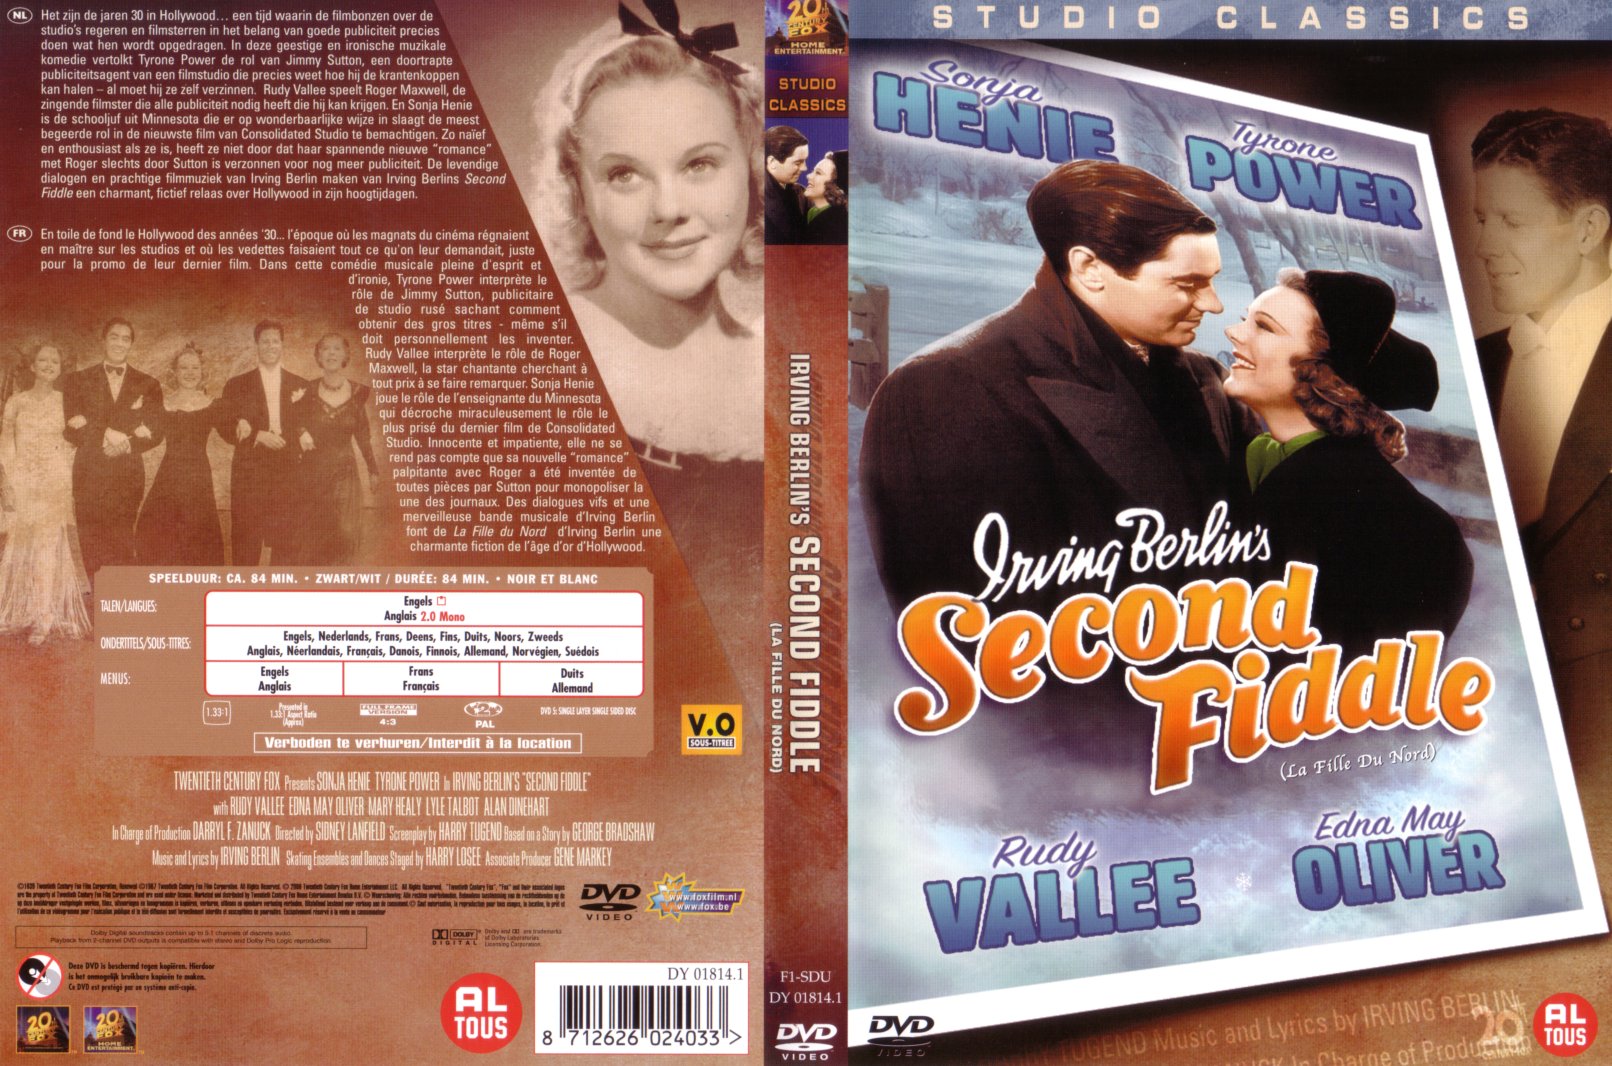 Jaquette DVD Second fiddle - La fille du nord